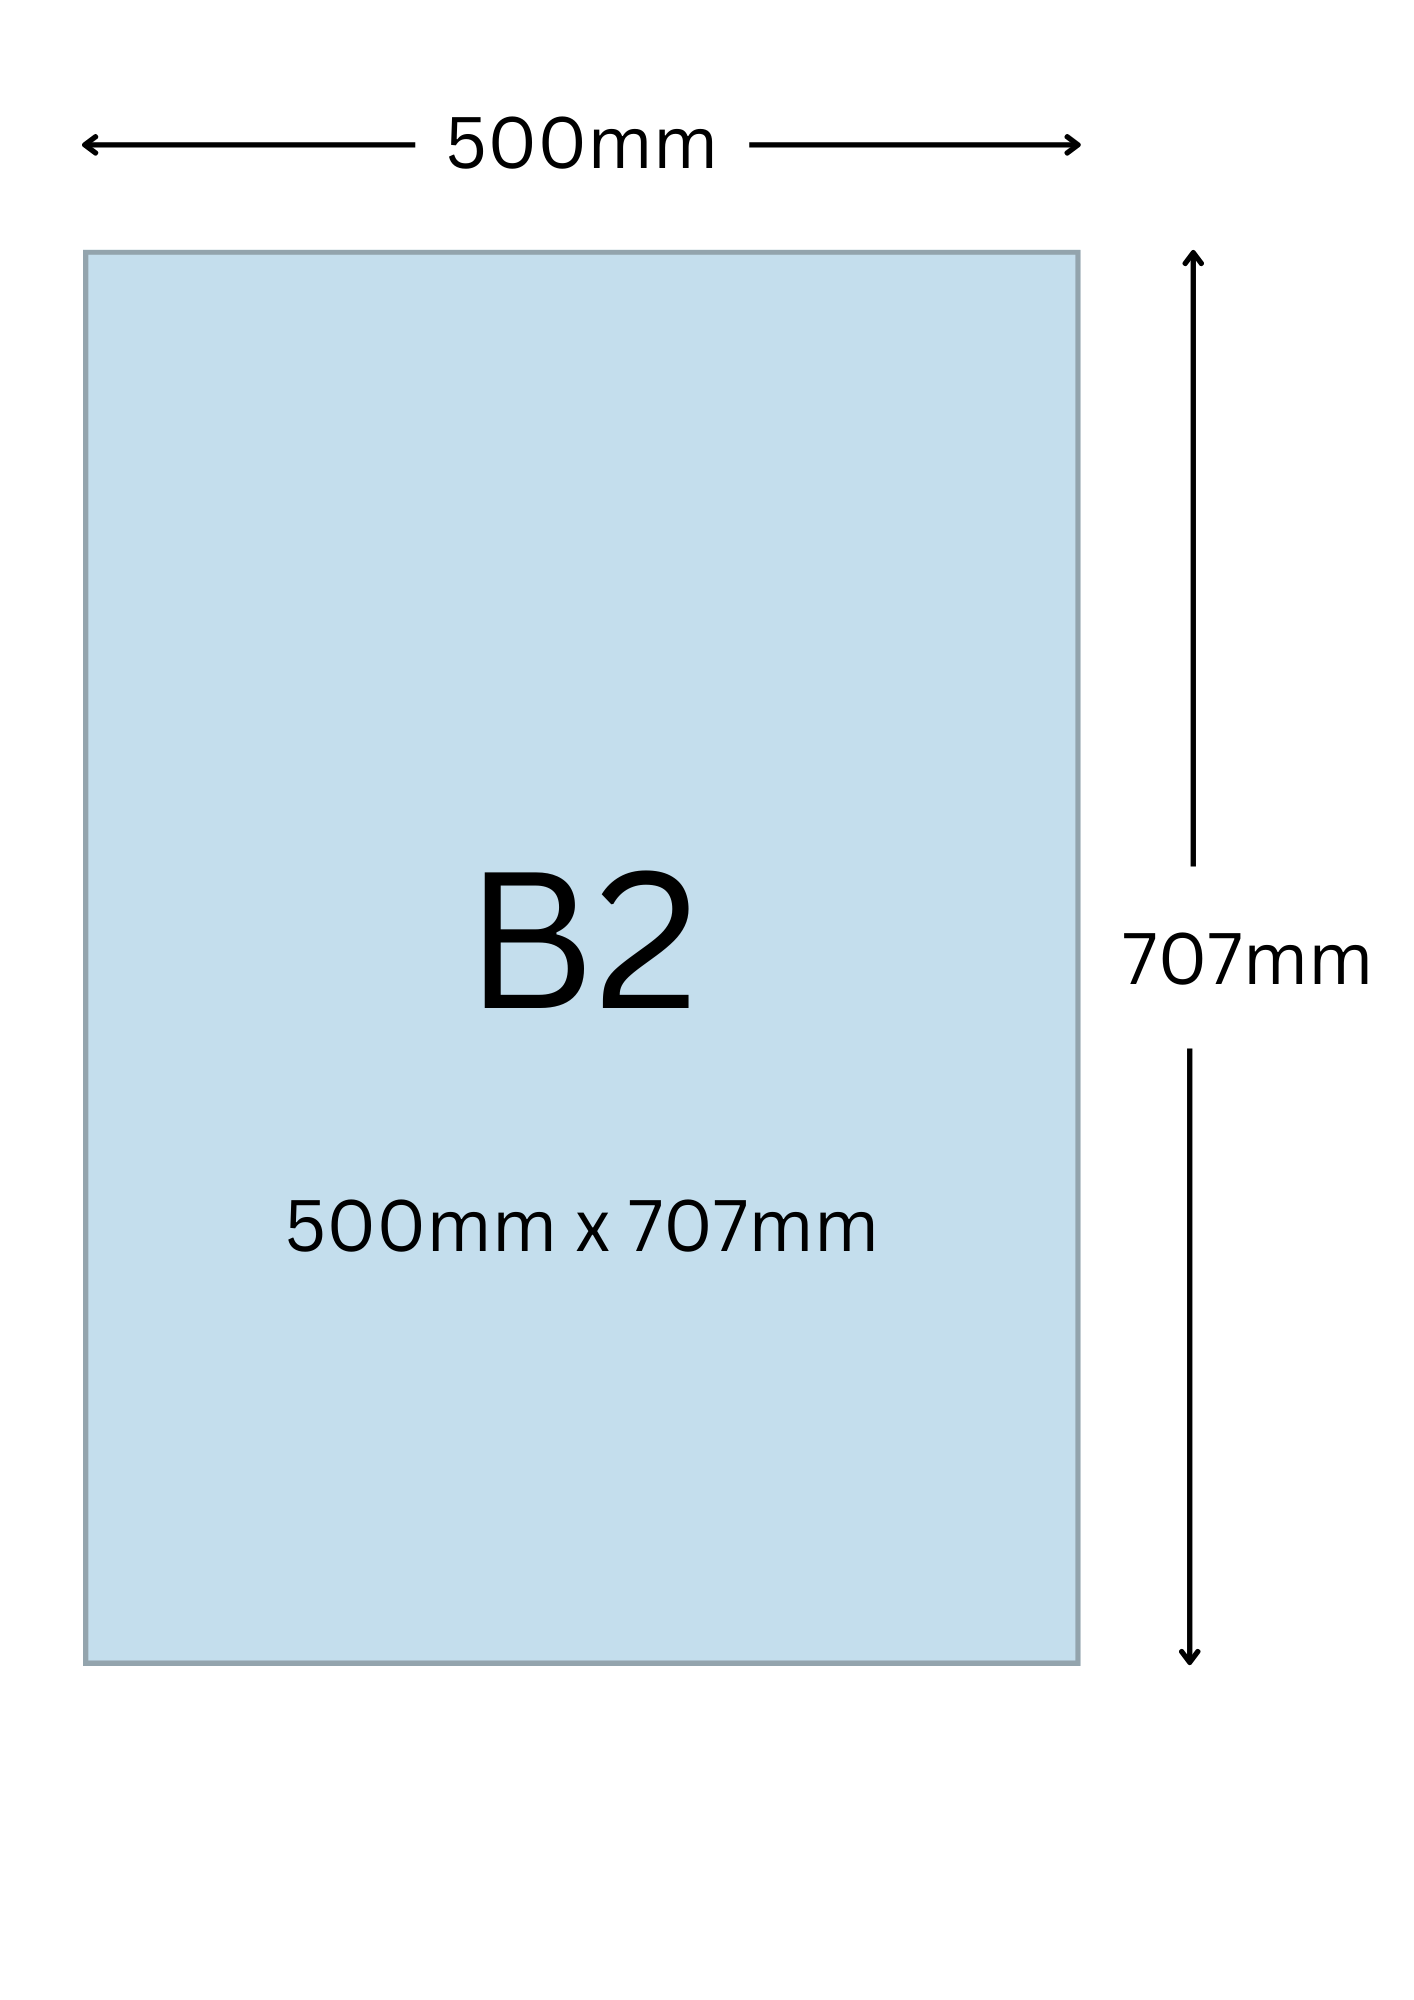 B2尺寸公分, B2紙張尺寸大小, B2紙張對應開數是幾開